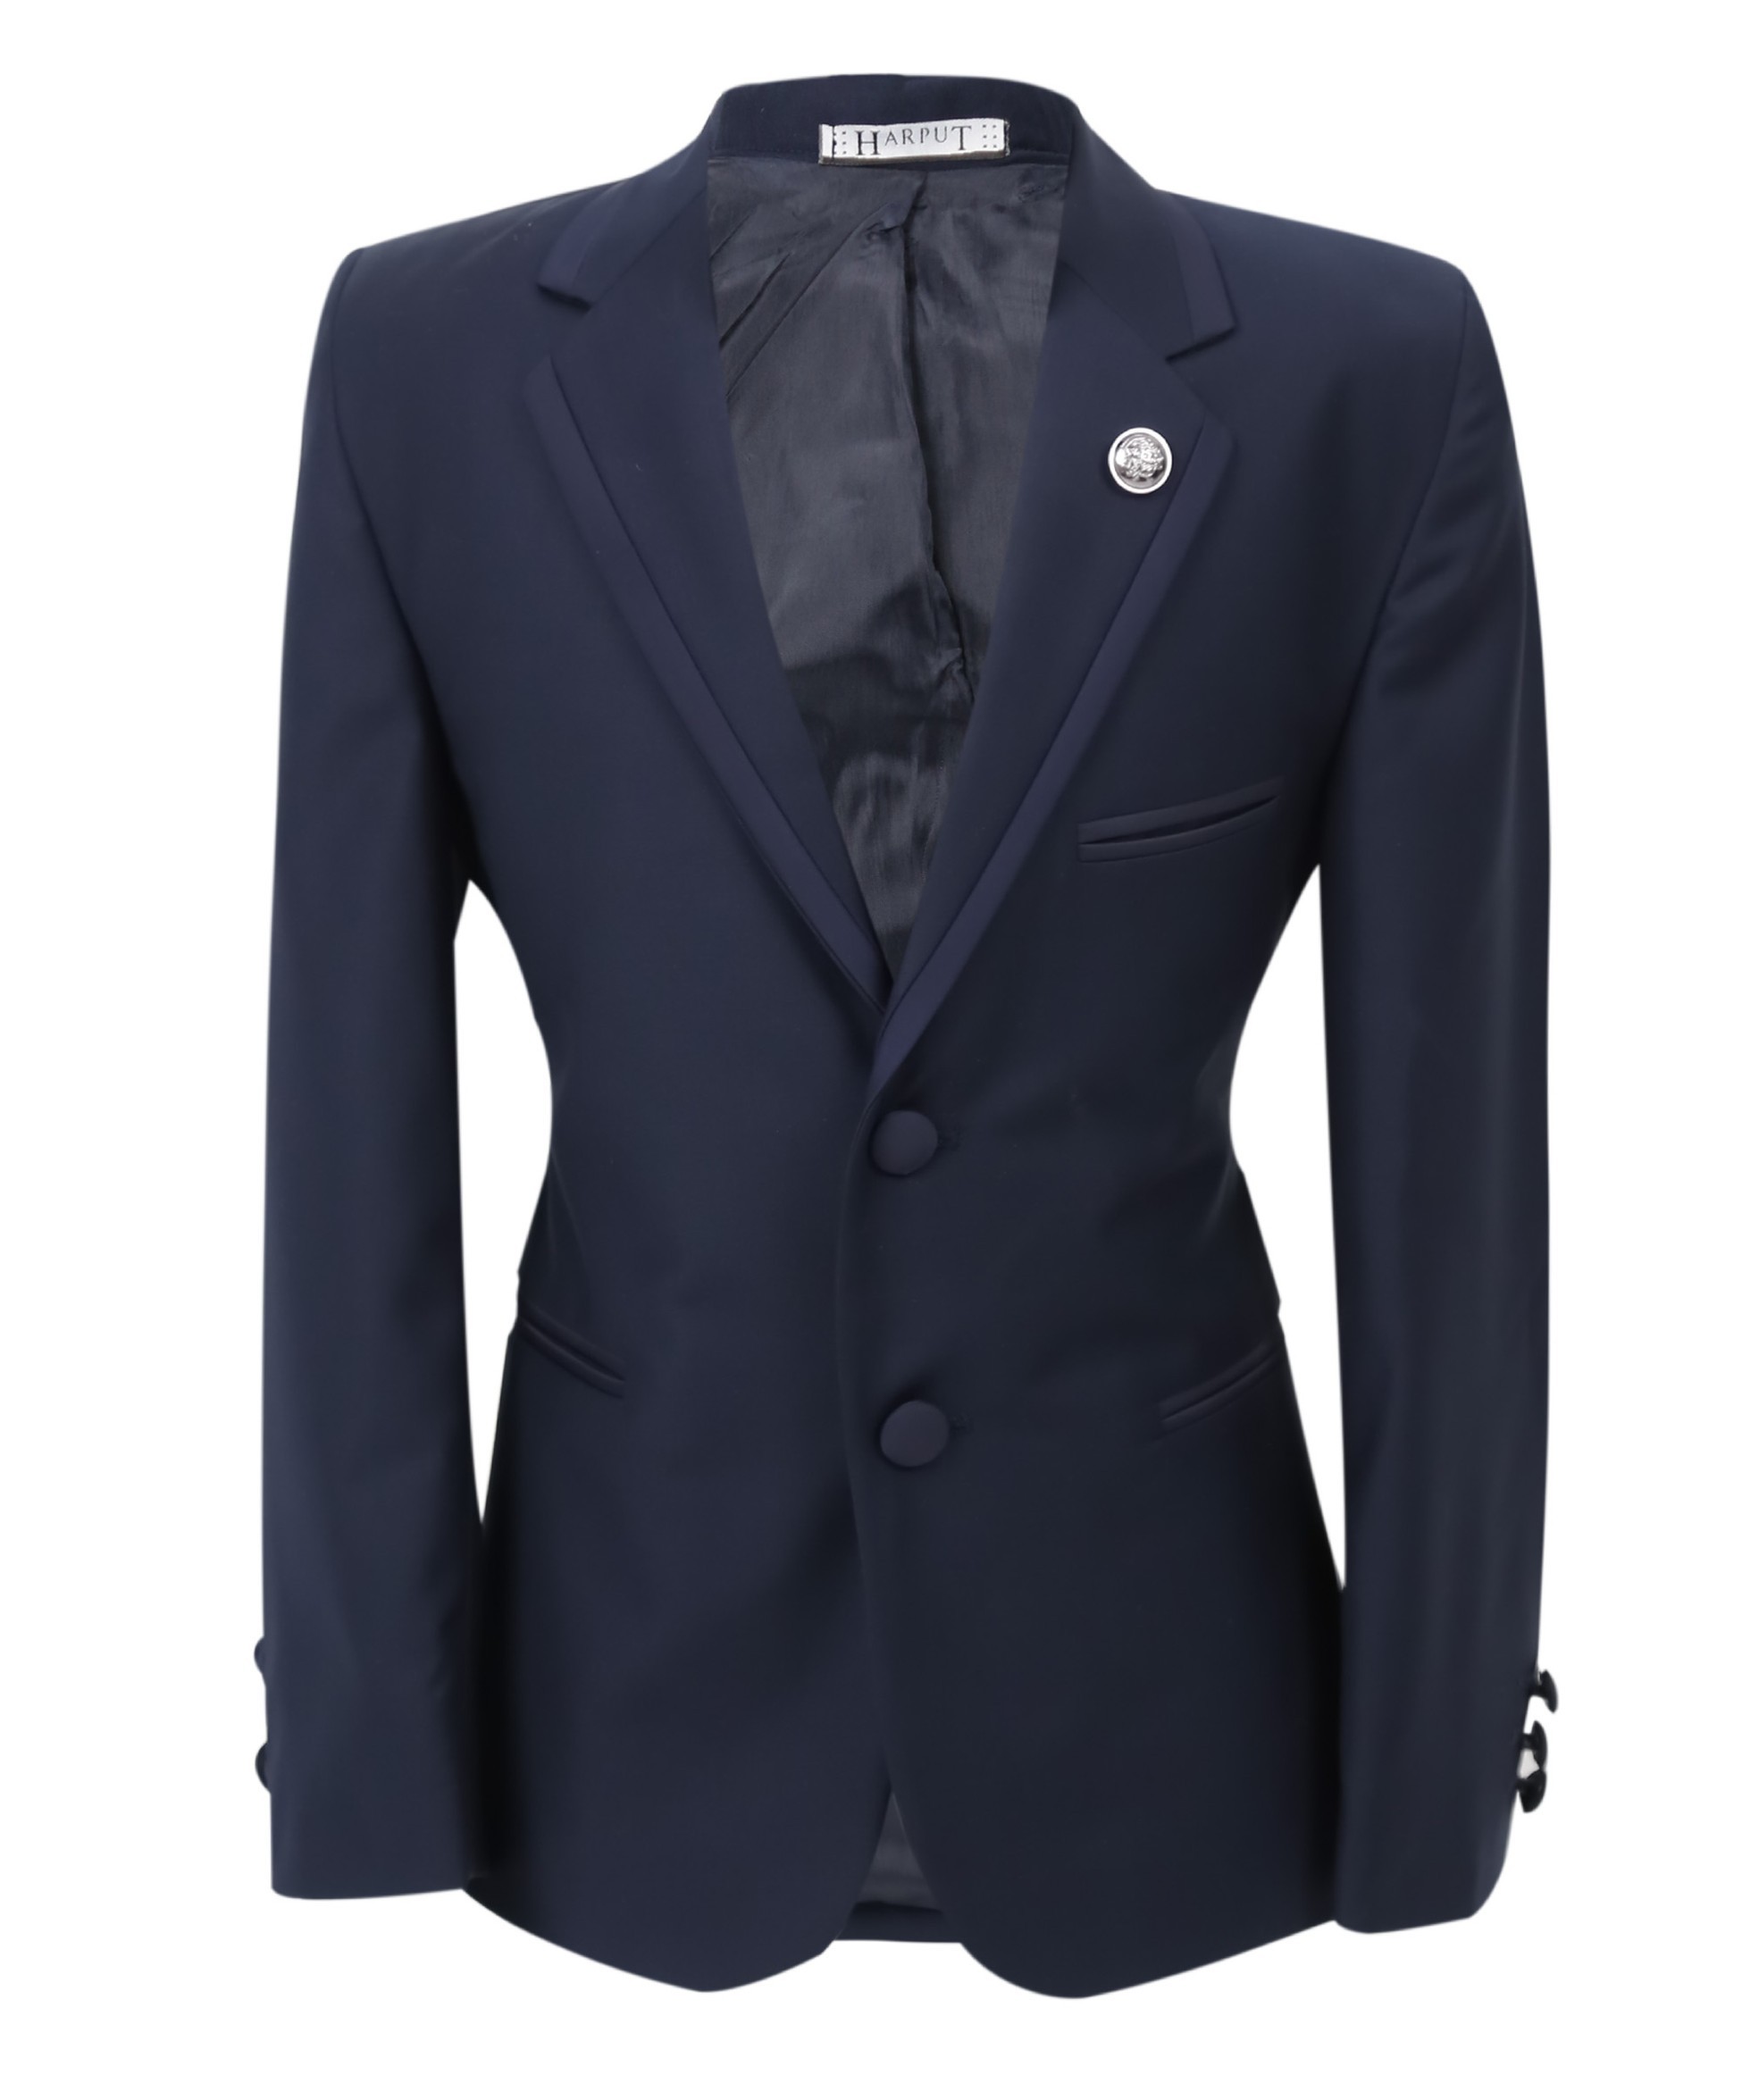 Jungen Smoking Paspel Dinner Anzug, Slim Fit 5-Teiliges Set für Hochzeiten und Besondere Anlässe - Navy blau